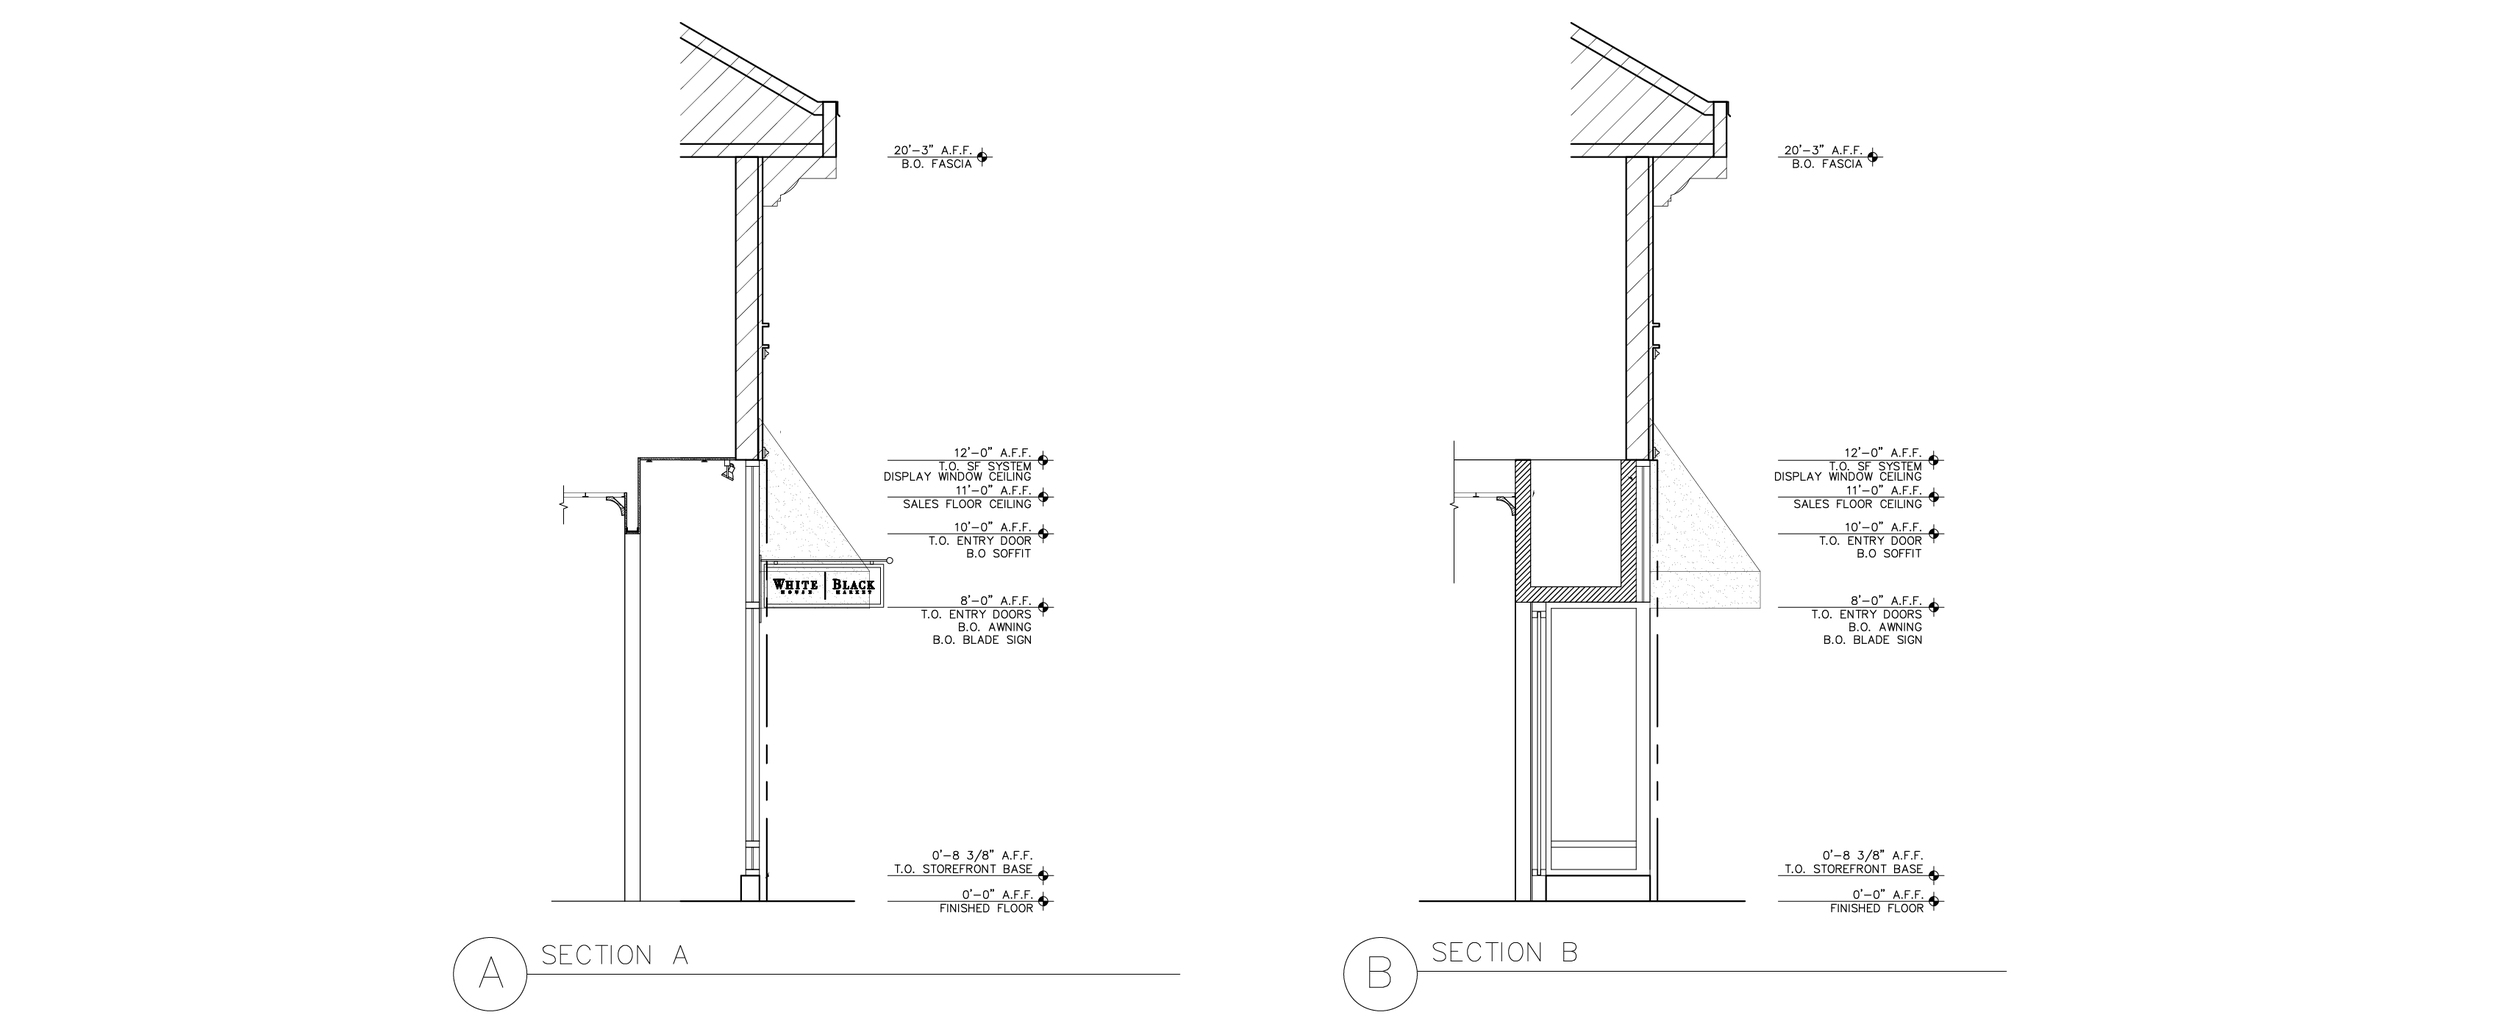 3658 - Storefront Elevation Sections - for website-01.jpg